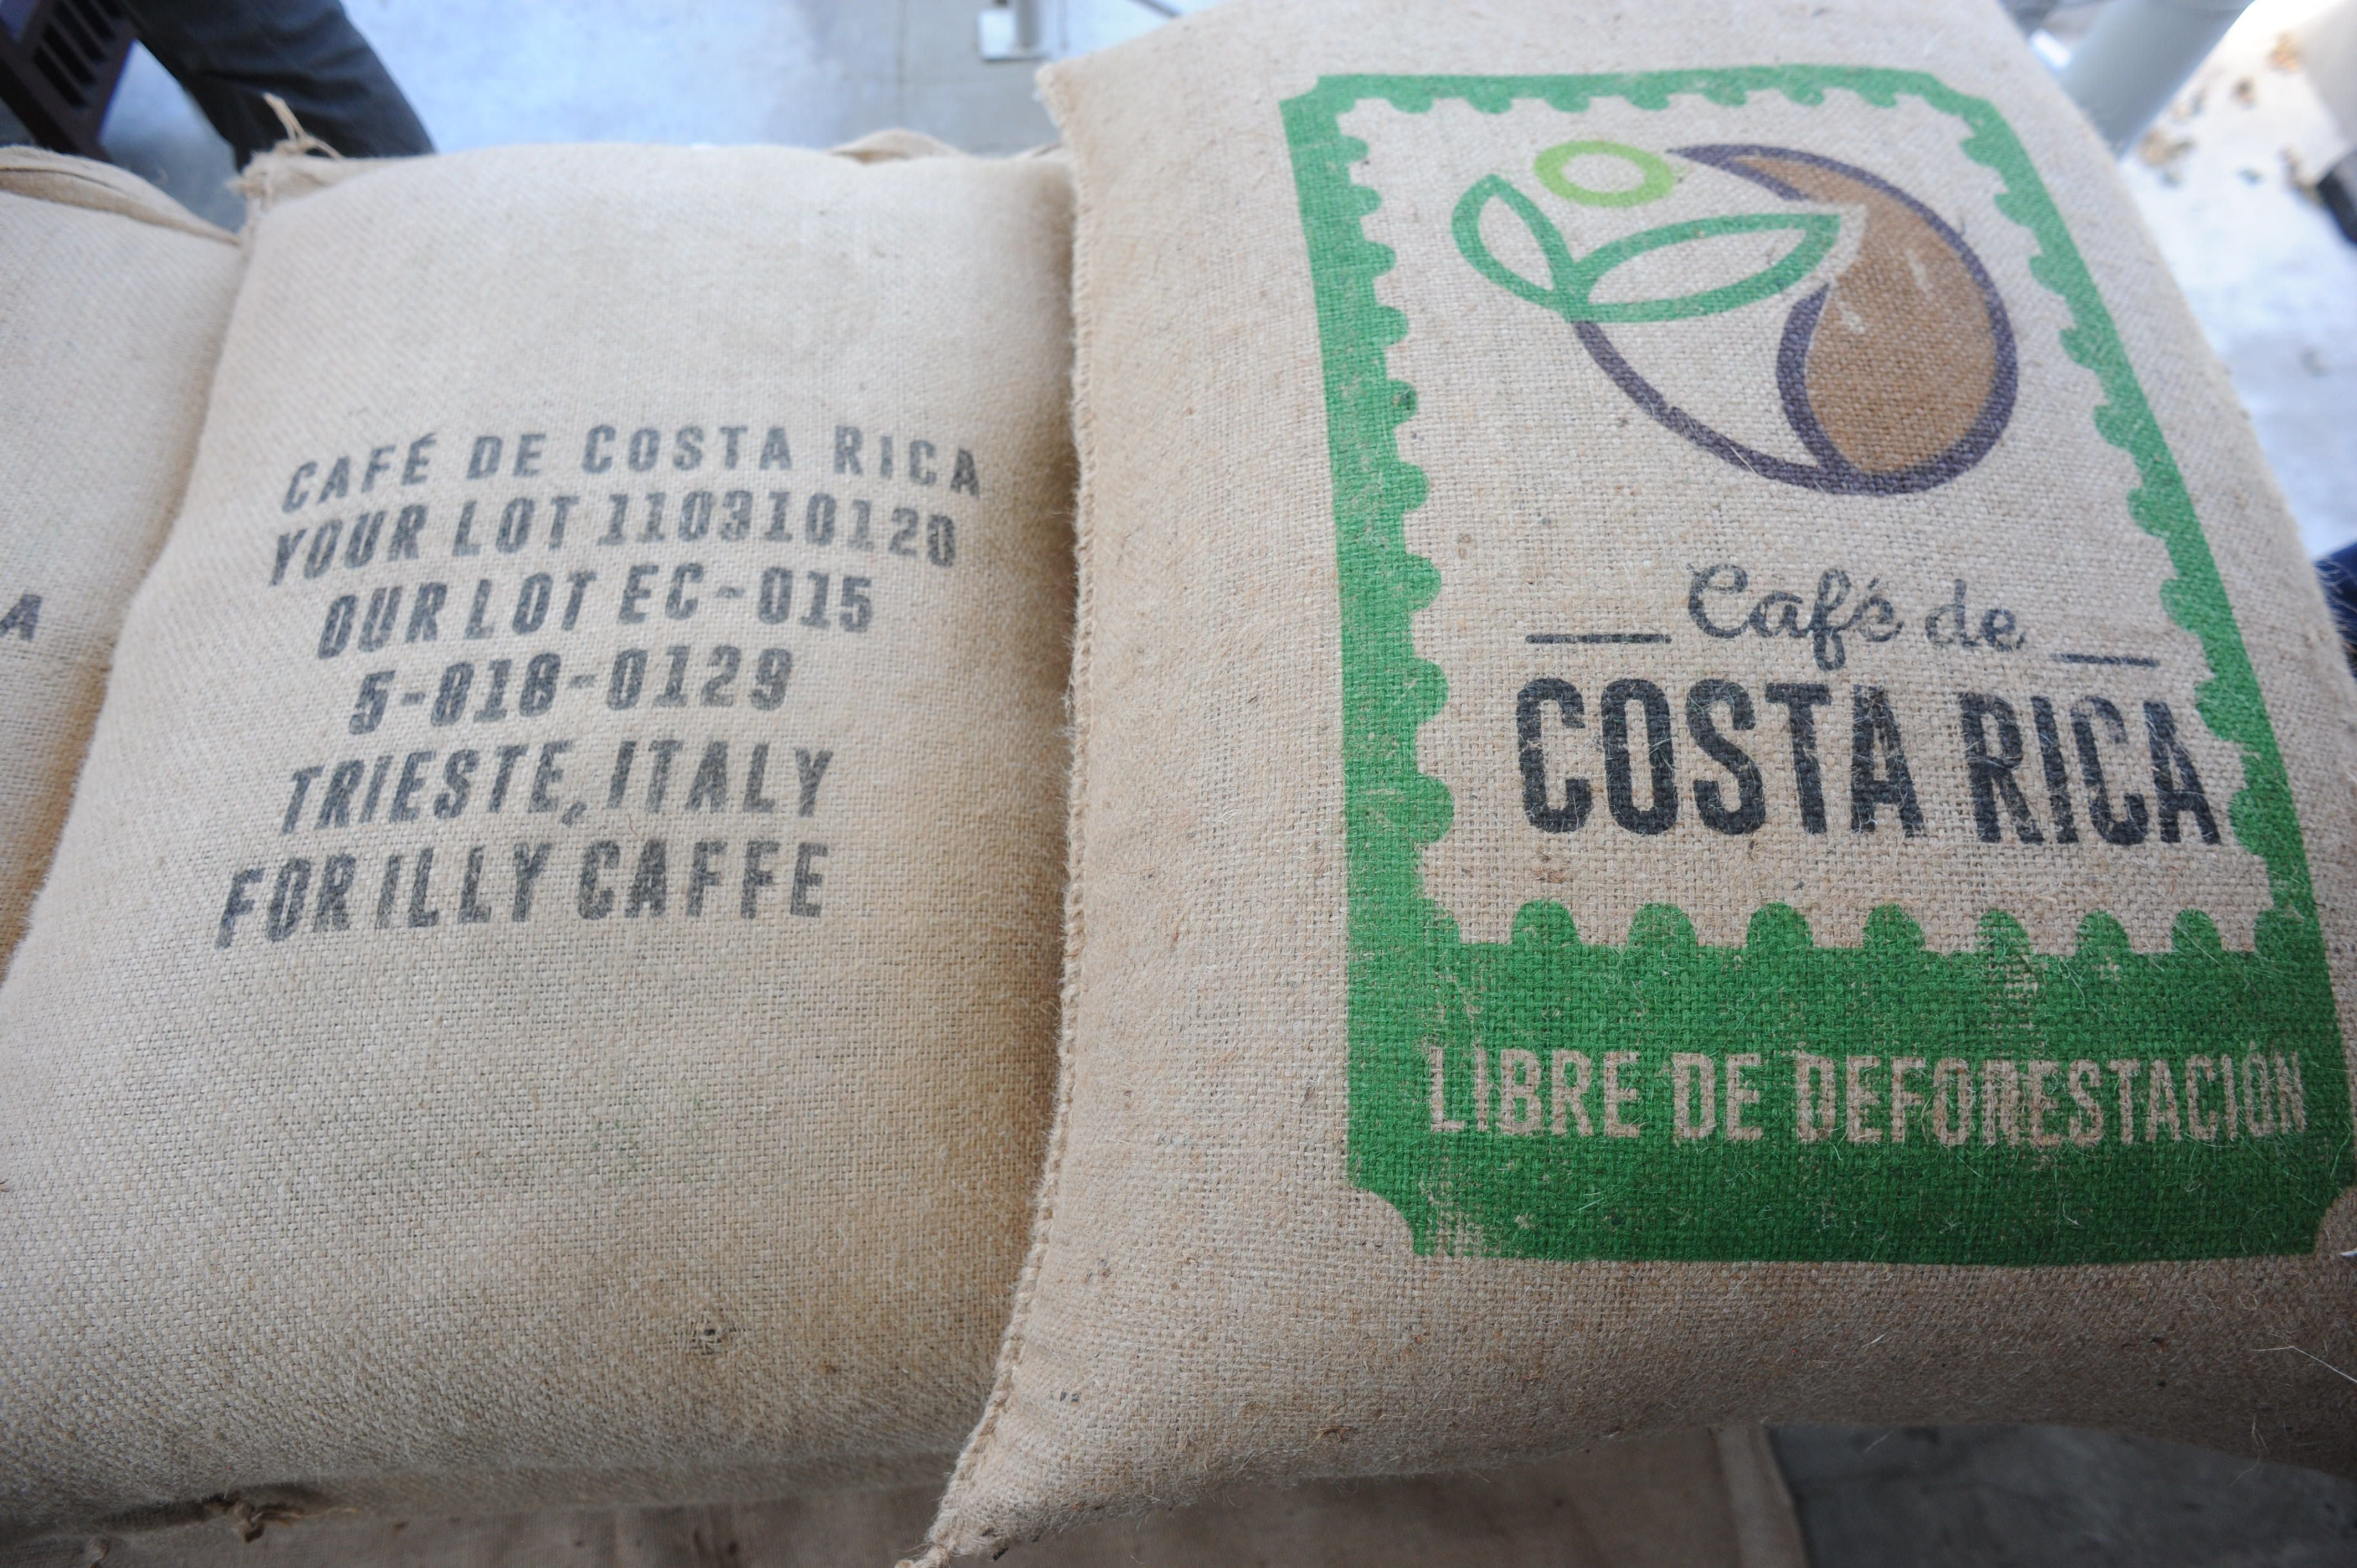 Productores confían en lograr un café ‘libre de deforestación’ apto para exportarse a la UE